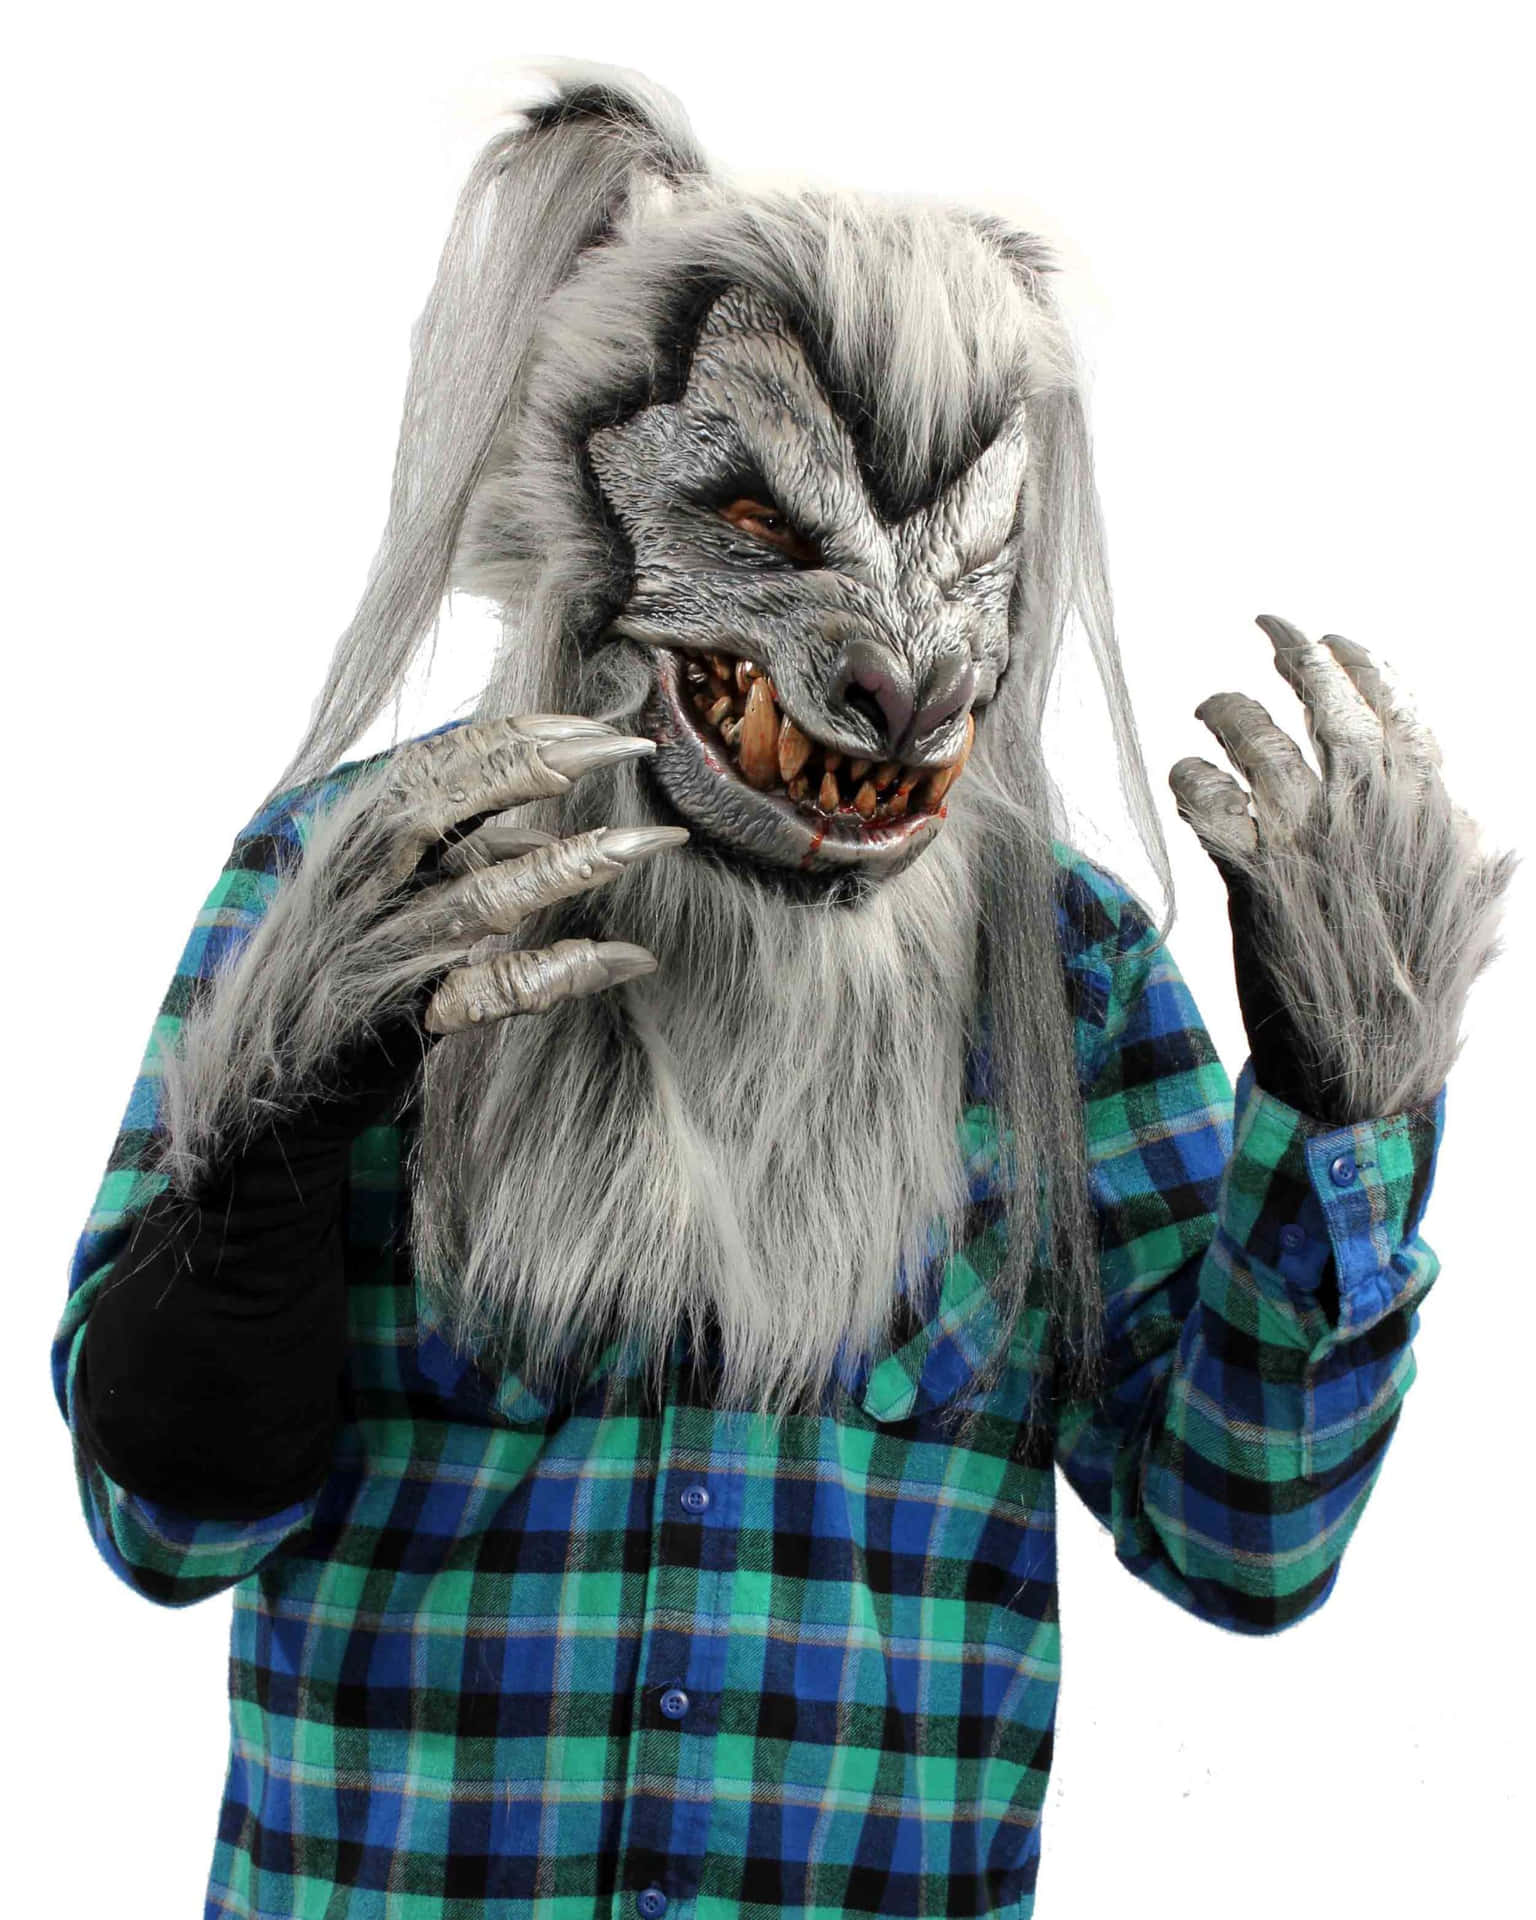 Fierce Werewolf Costume with Glowing Eyes Wallpaper